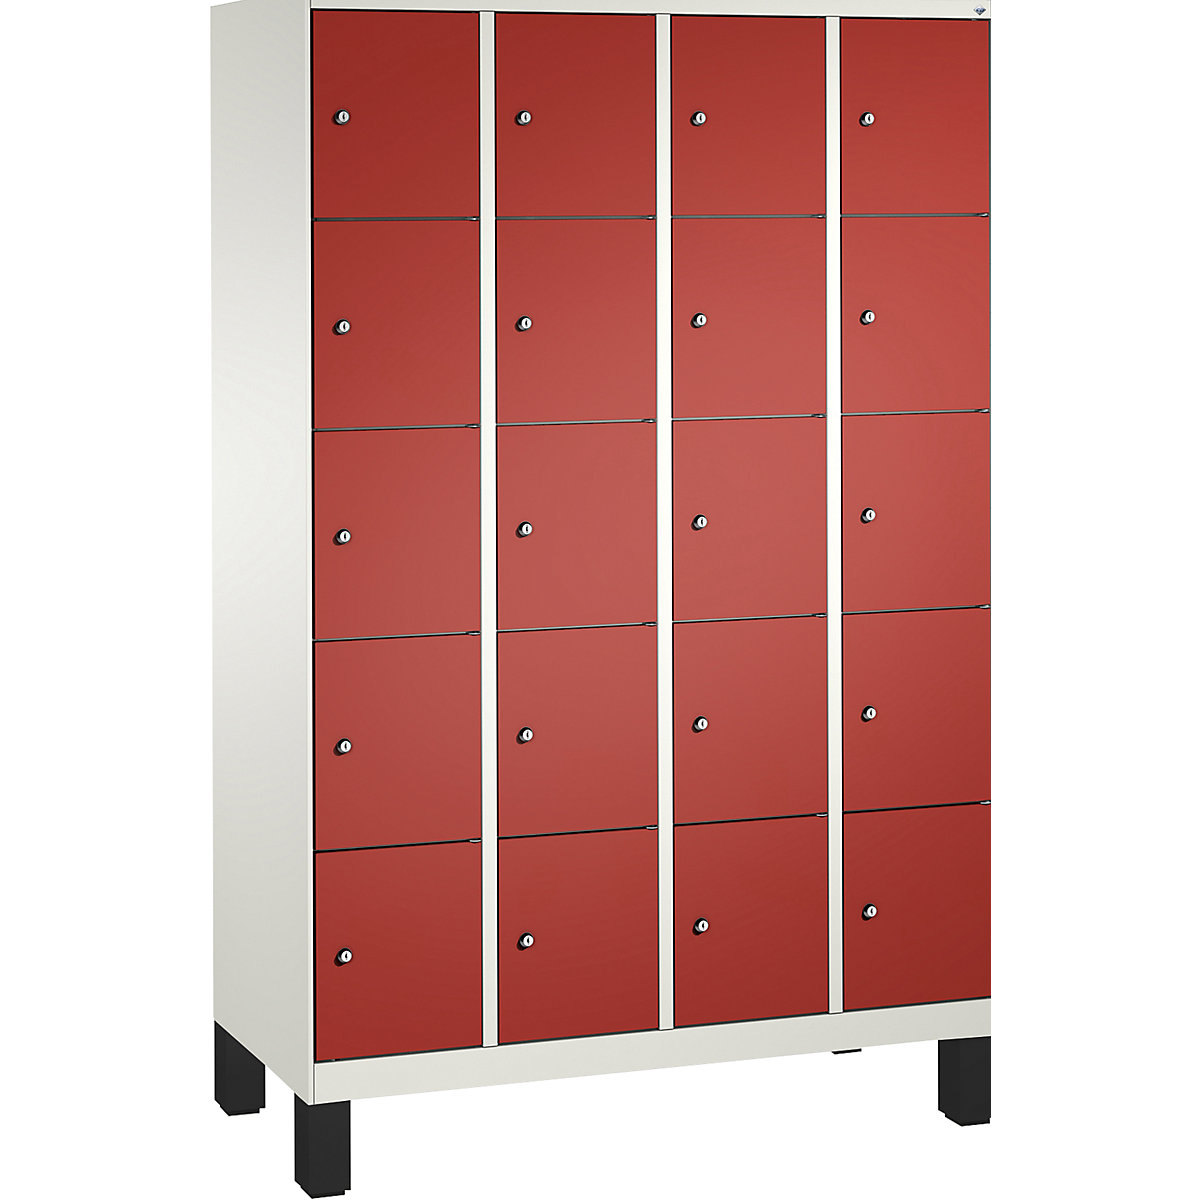 Armoire à casiers sur pieds EVOLO – C+P, 4 compartiments, 5 casiers chacun, largeur compartiments 300 mm, blanc trafic / rouge feu-11